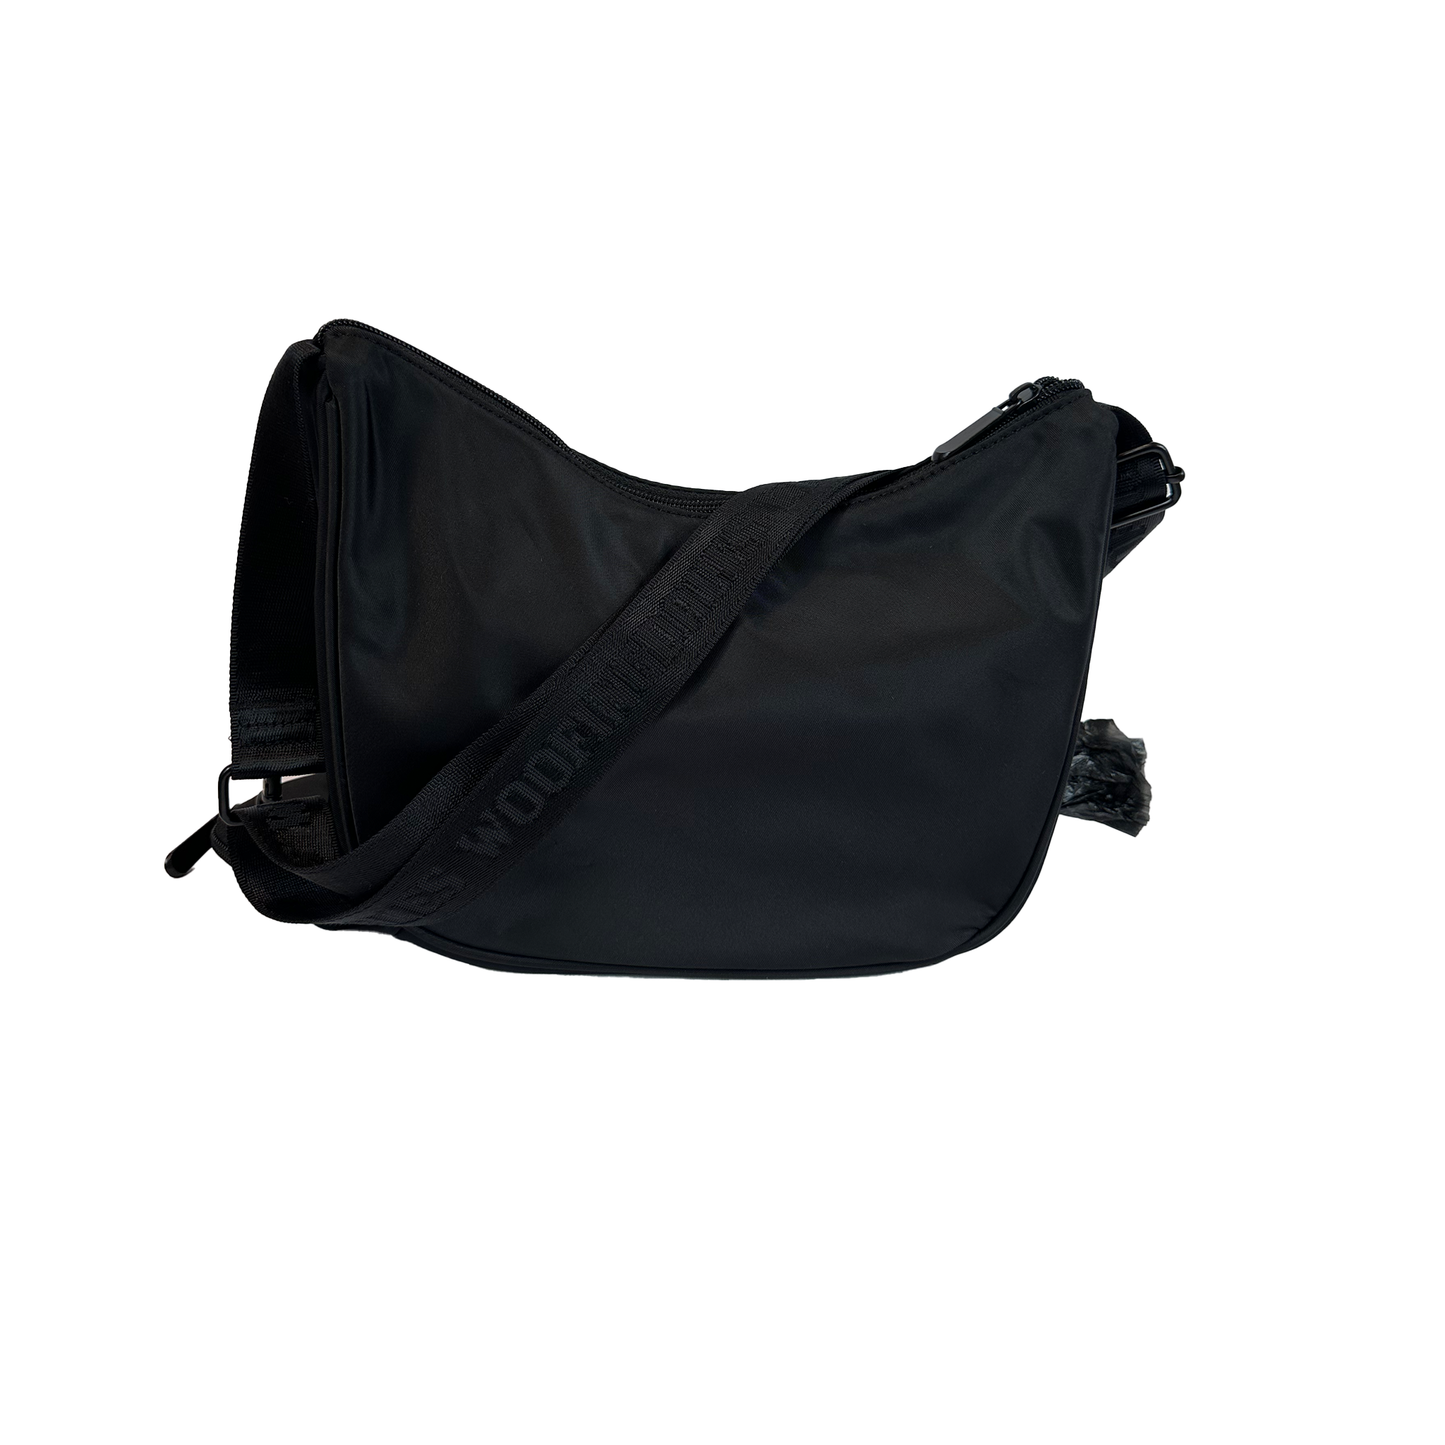 Image of Woofingdales Product - Walking Bag (Black)